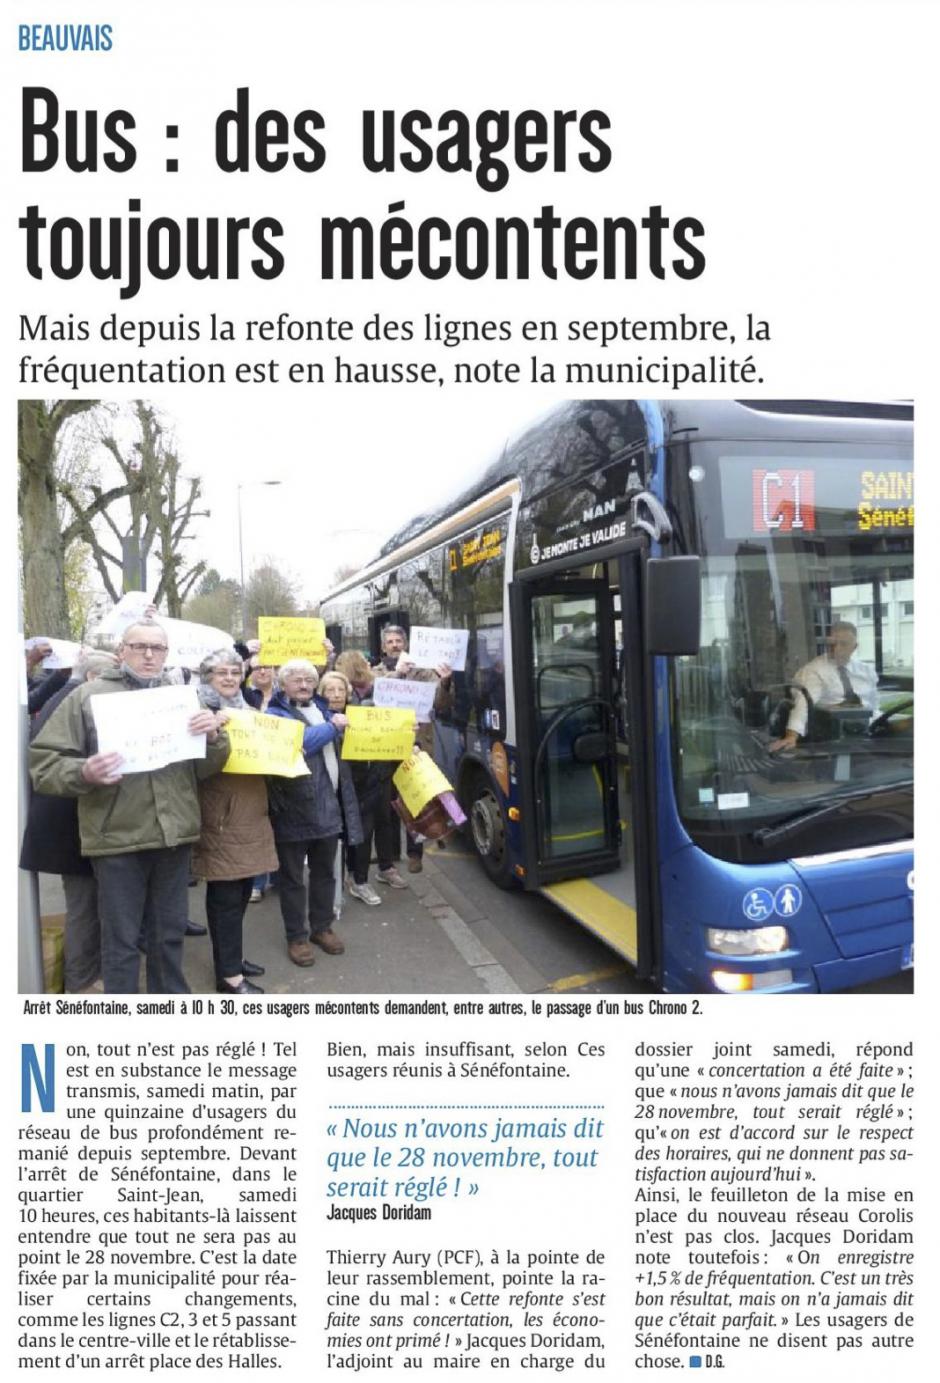 20161128-CP-Beauvais-Bus : des usagers toujours mécontents